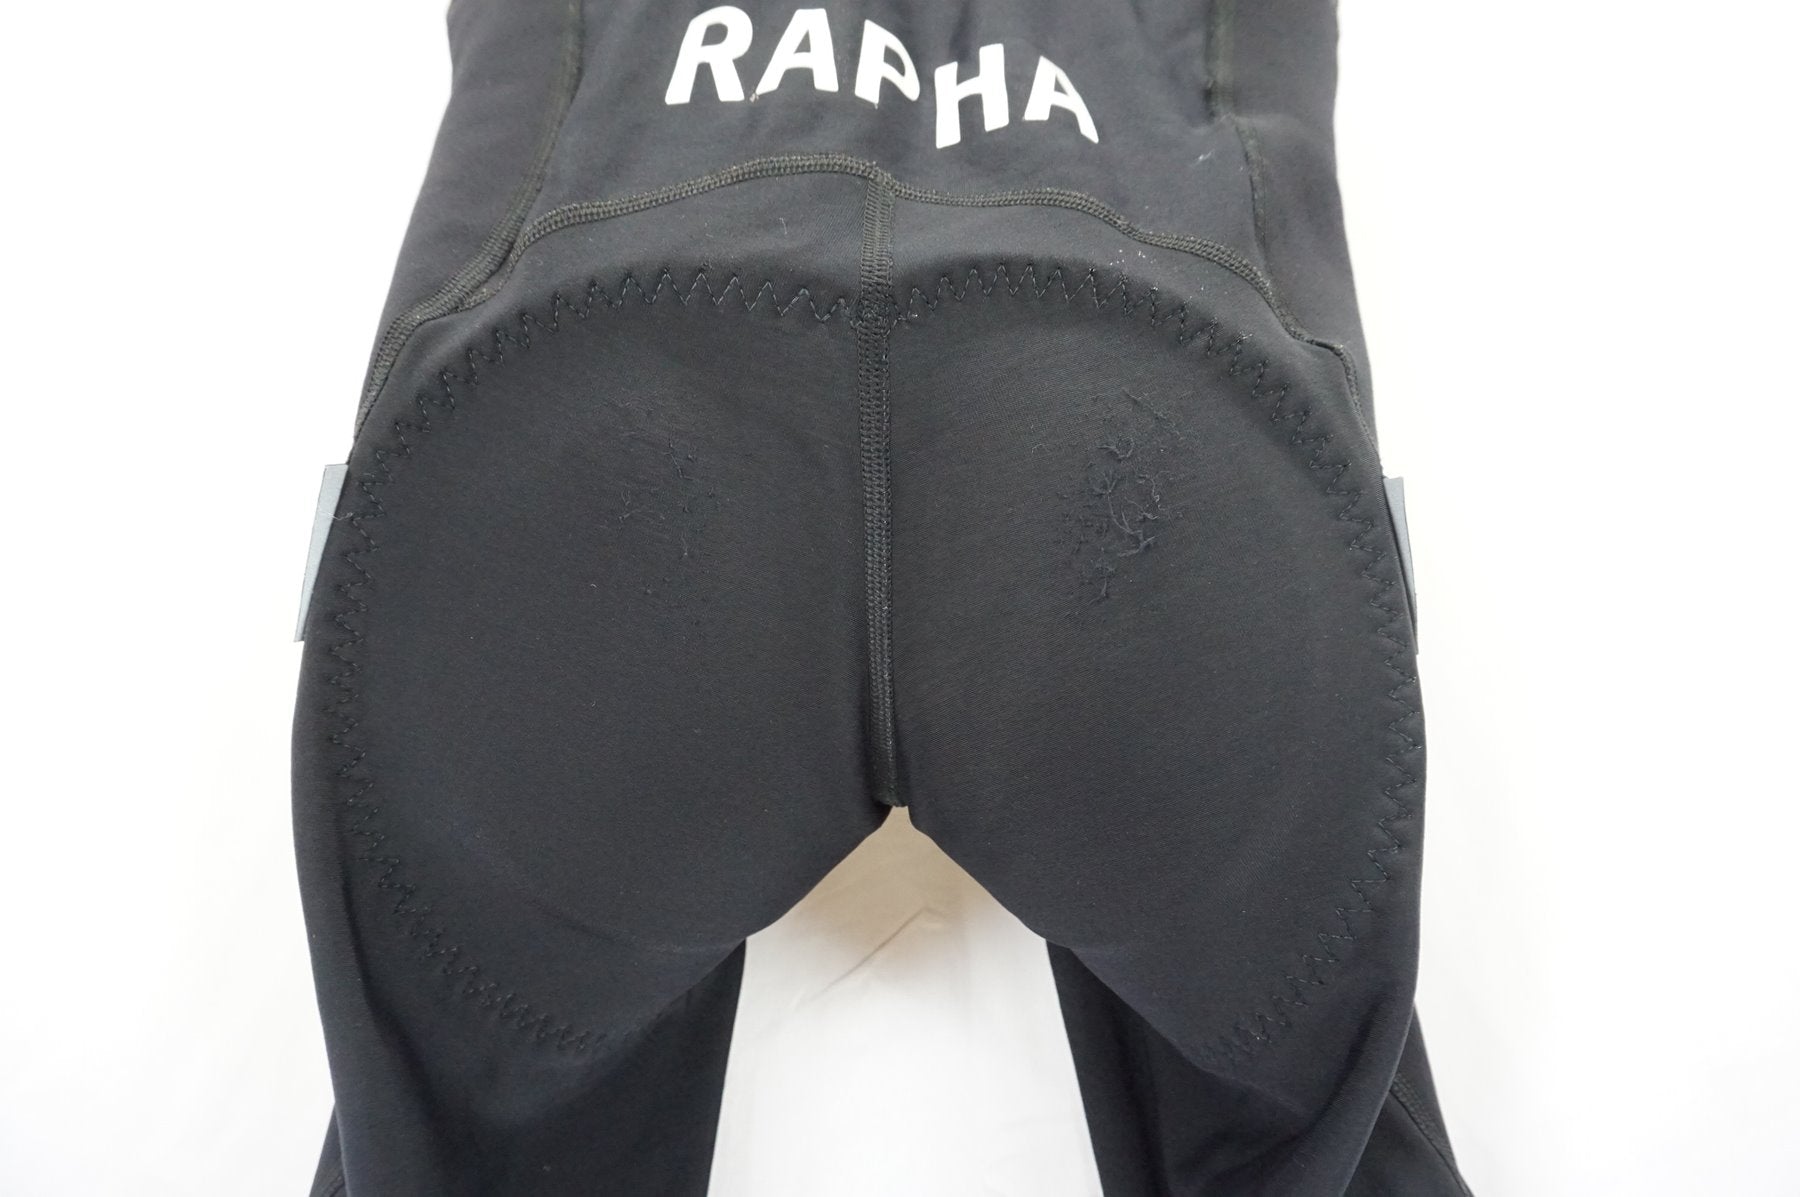 RAPHA 「ラファ」 PRO TEAM WINTER TIGHTS WITH PAD XSサイズ メンズ 